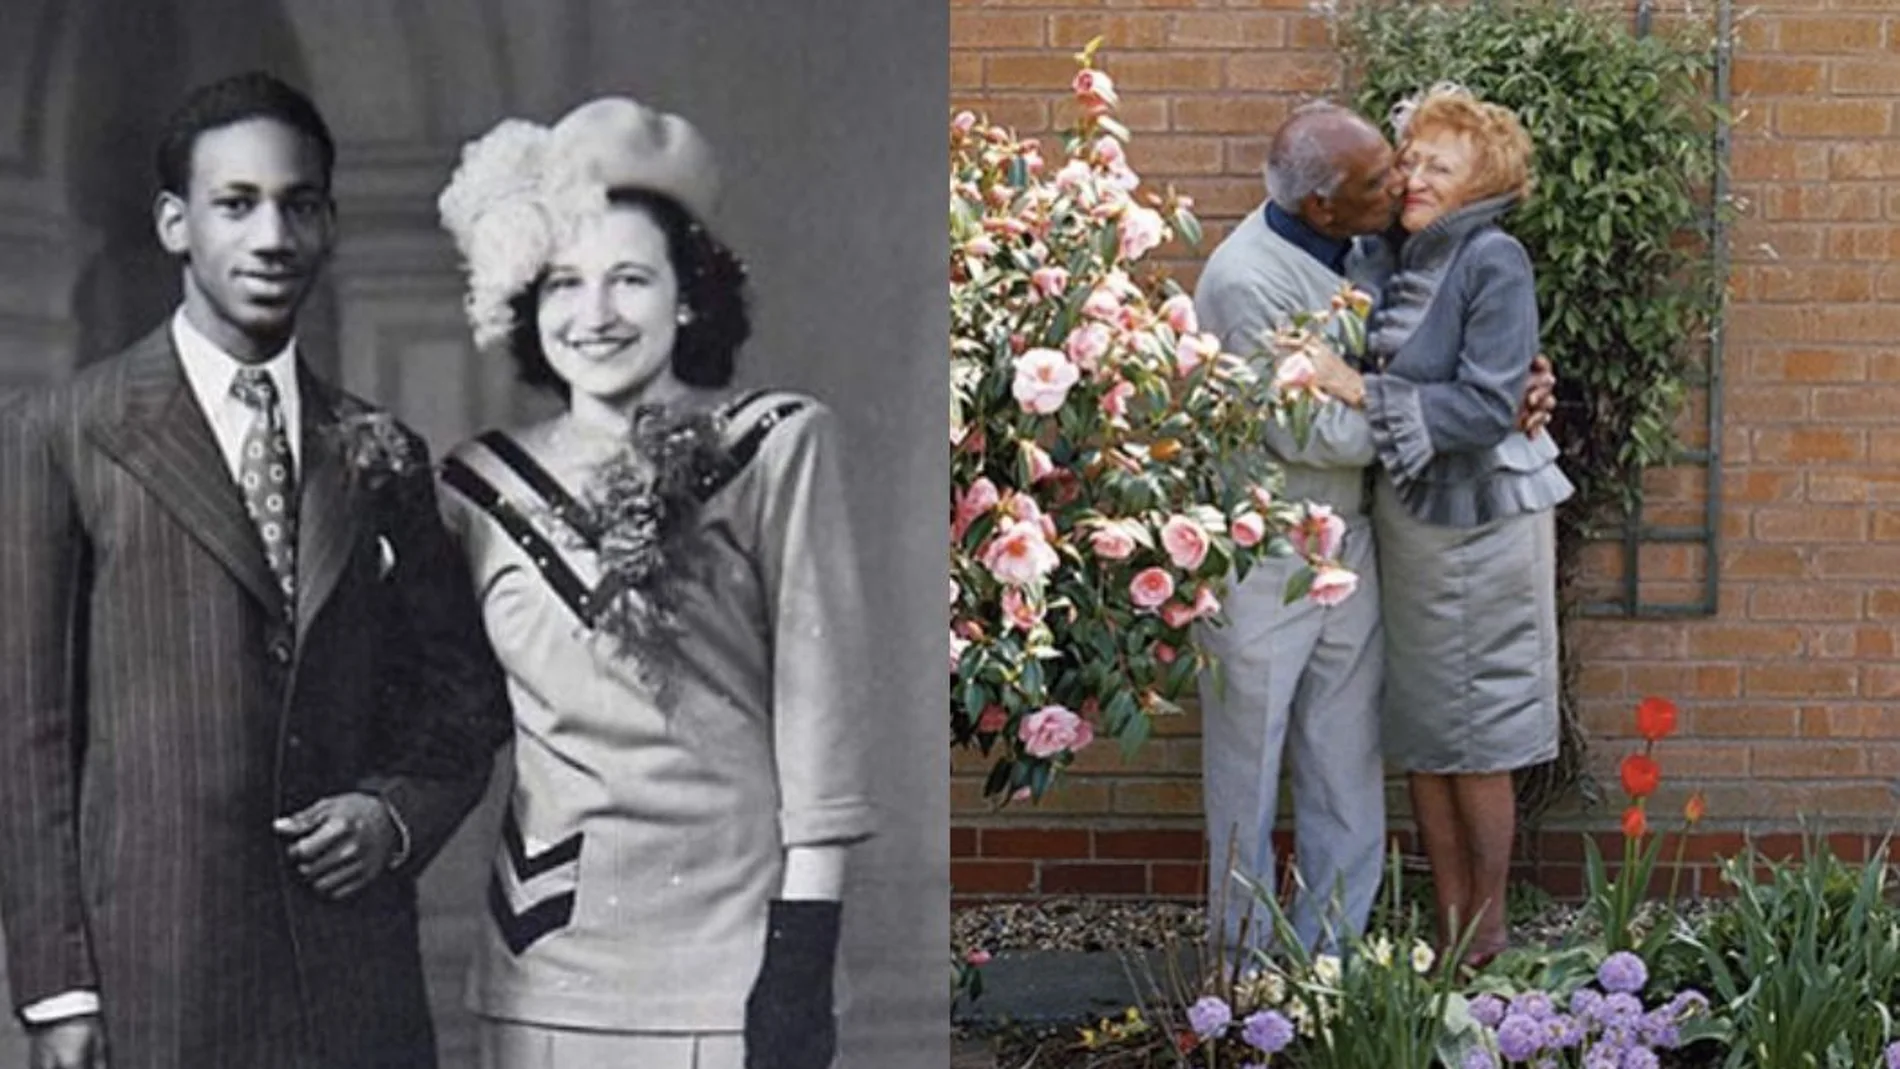 La historia de amor que desafió el racismo: Mary Jacobs y Jake celebran 70 años de matrimonio